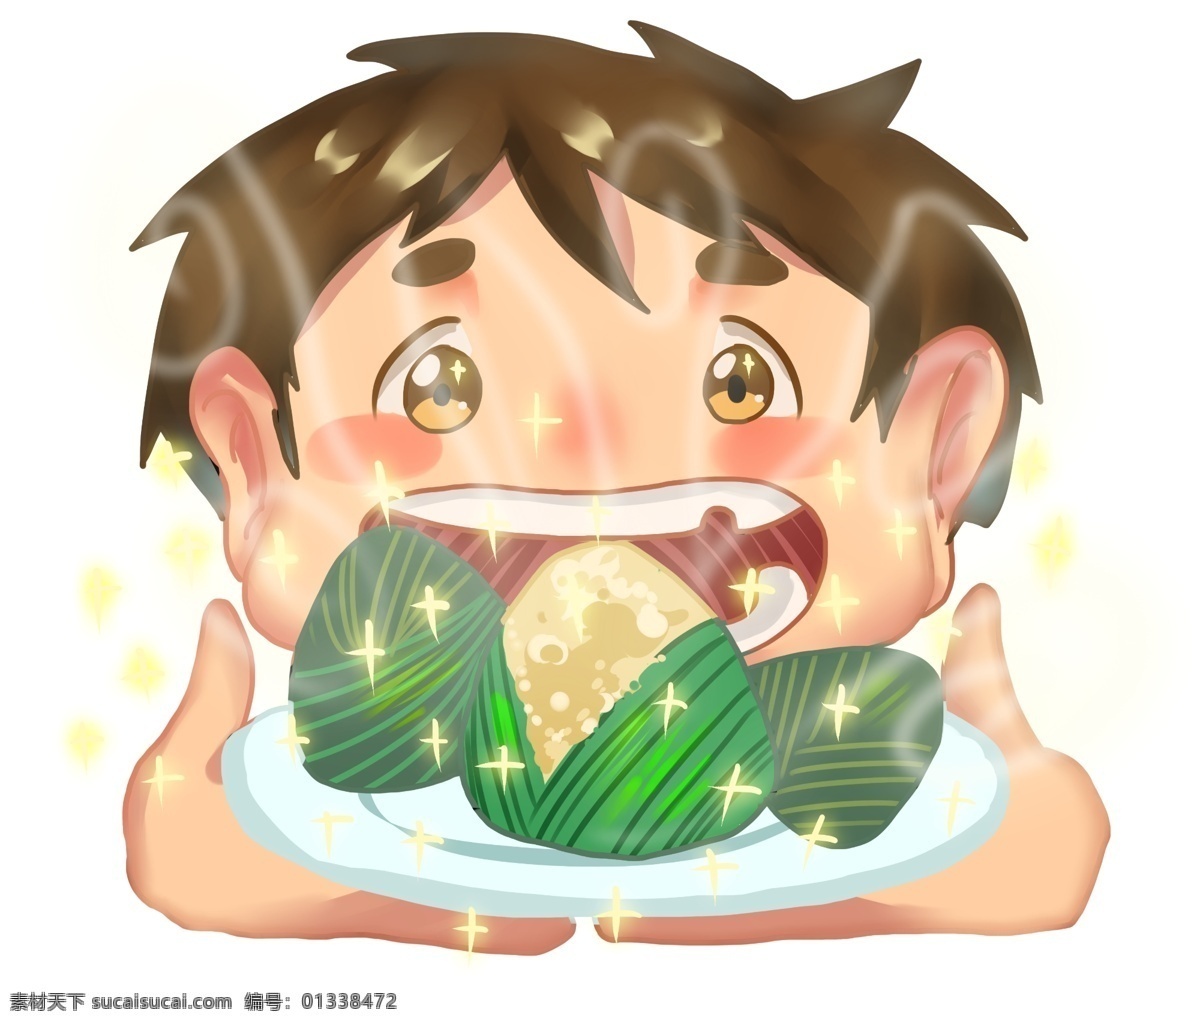 端午节 小 男孩 吃 美味 粽子 吃粽子 端午节卡通 端午节手绘 肉粽 美味粽子